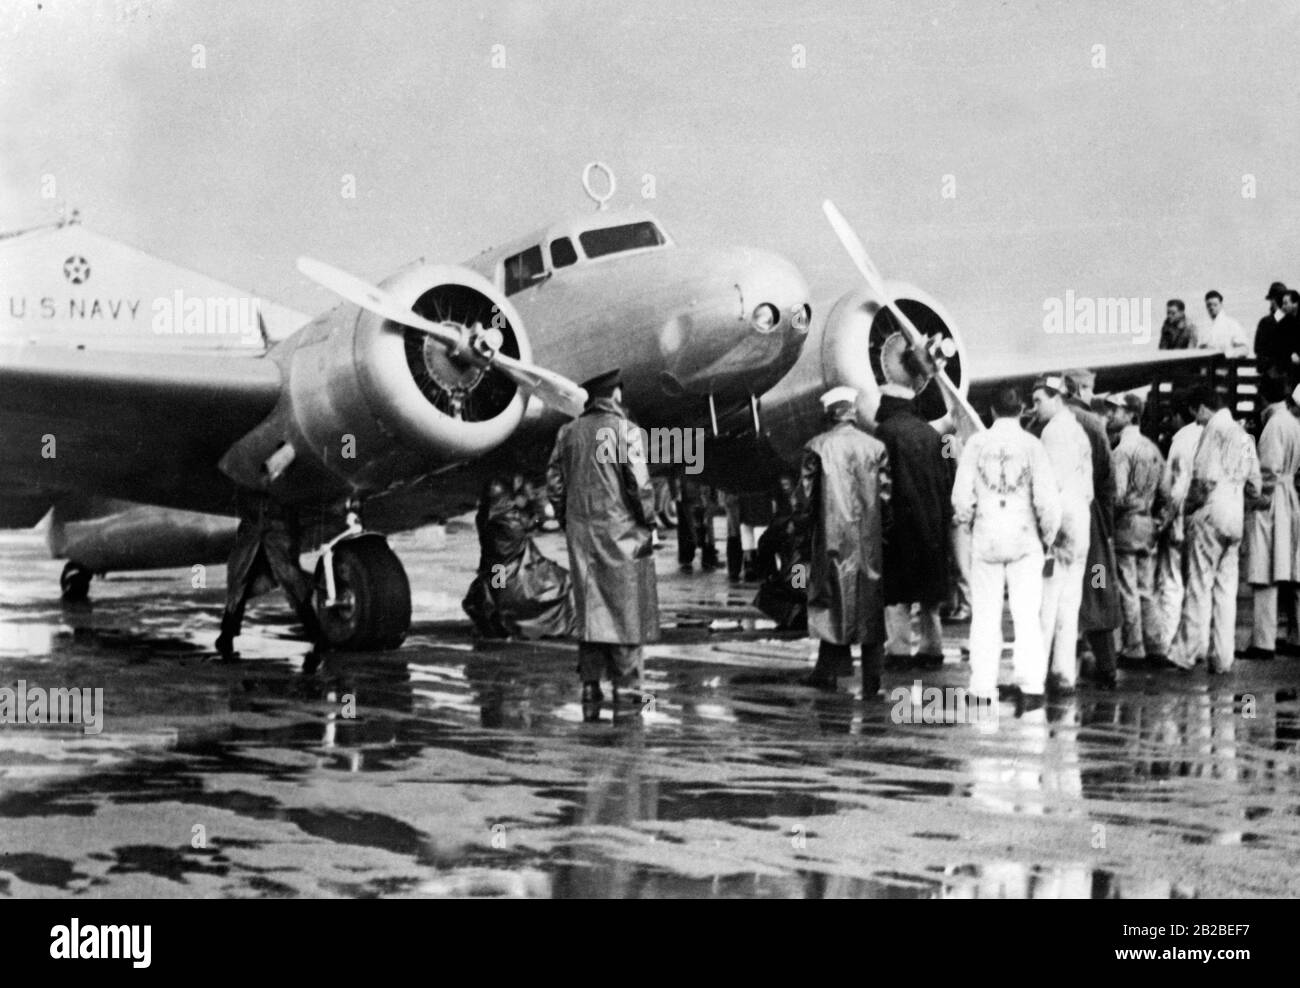 Amelia Earharts Flugzeug, eine zweimotorige Lockheed Electra, erhält eine vollständige Überprüfung durch die Crew des Cakland Airport in Amamada, Kalifornien, bevor sie auf ihrem letzten Flug um die Welt absteigt. Stockfoto